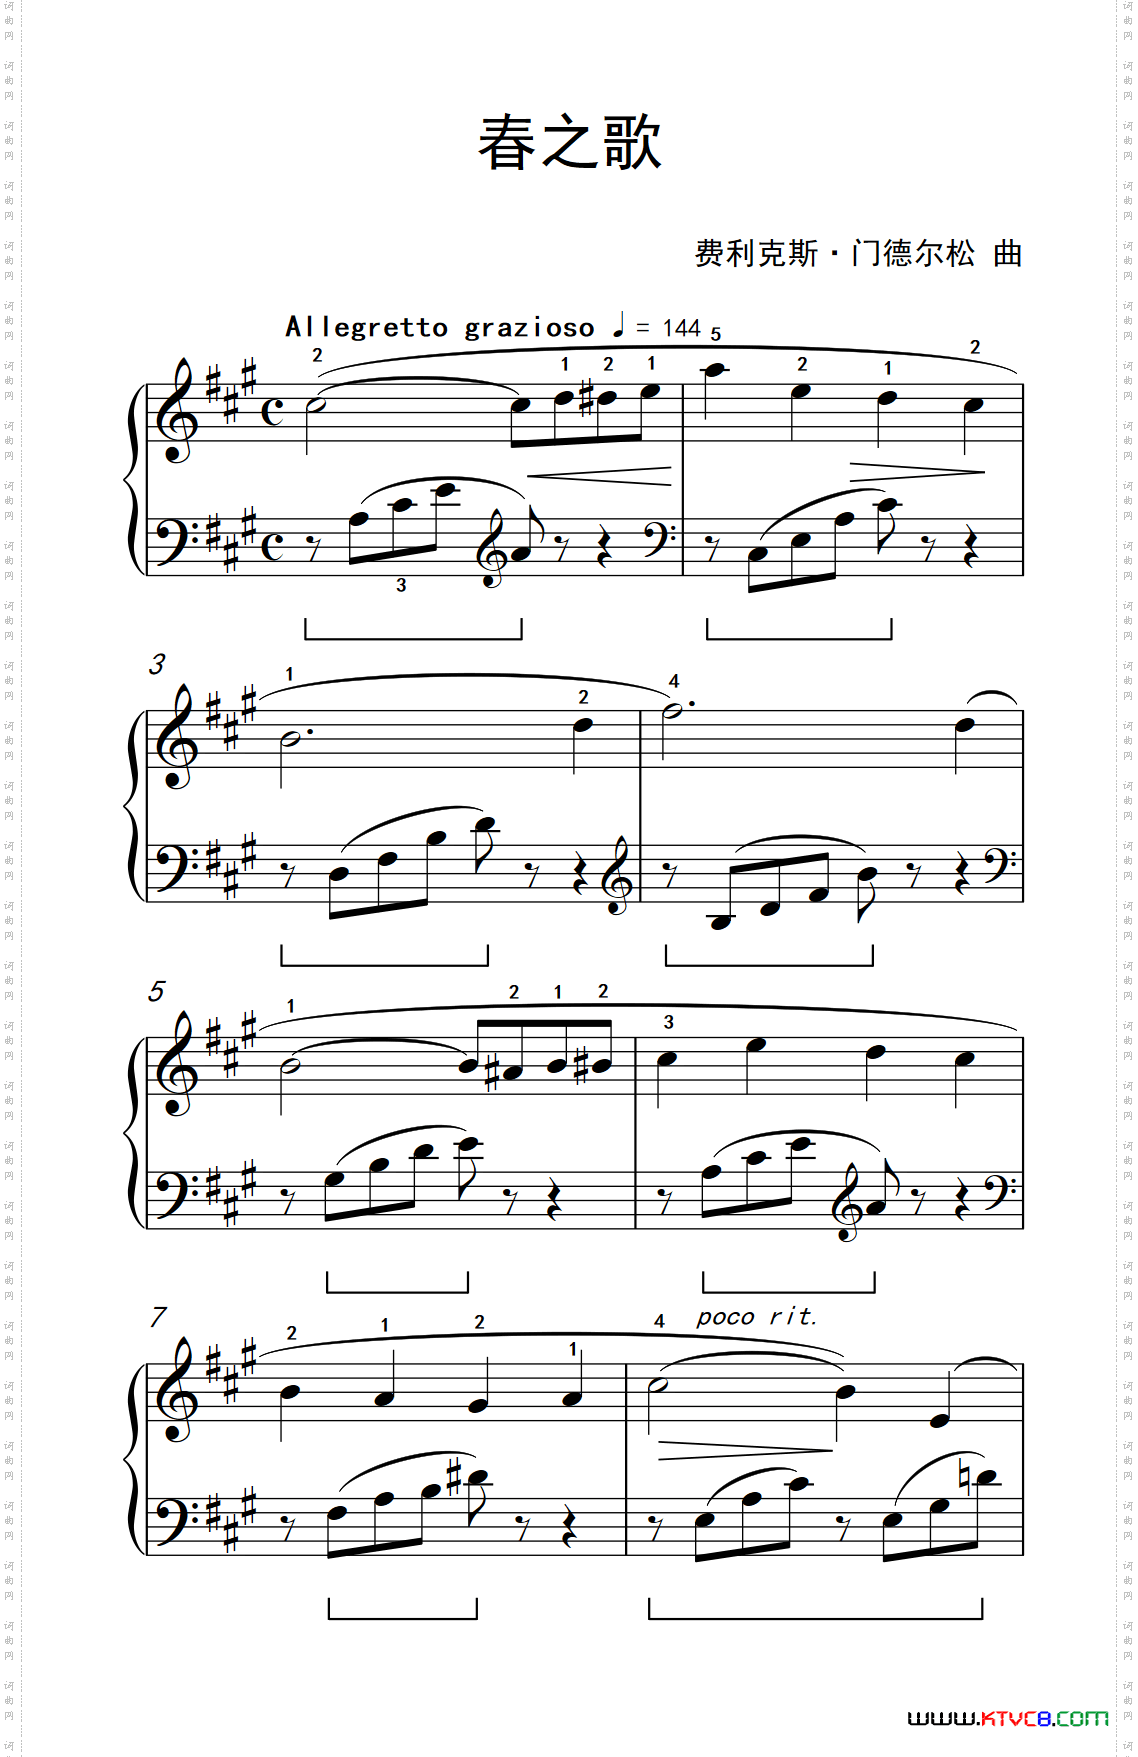 春之歌约翰·汤普森成人钢琴教程第二册